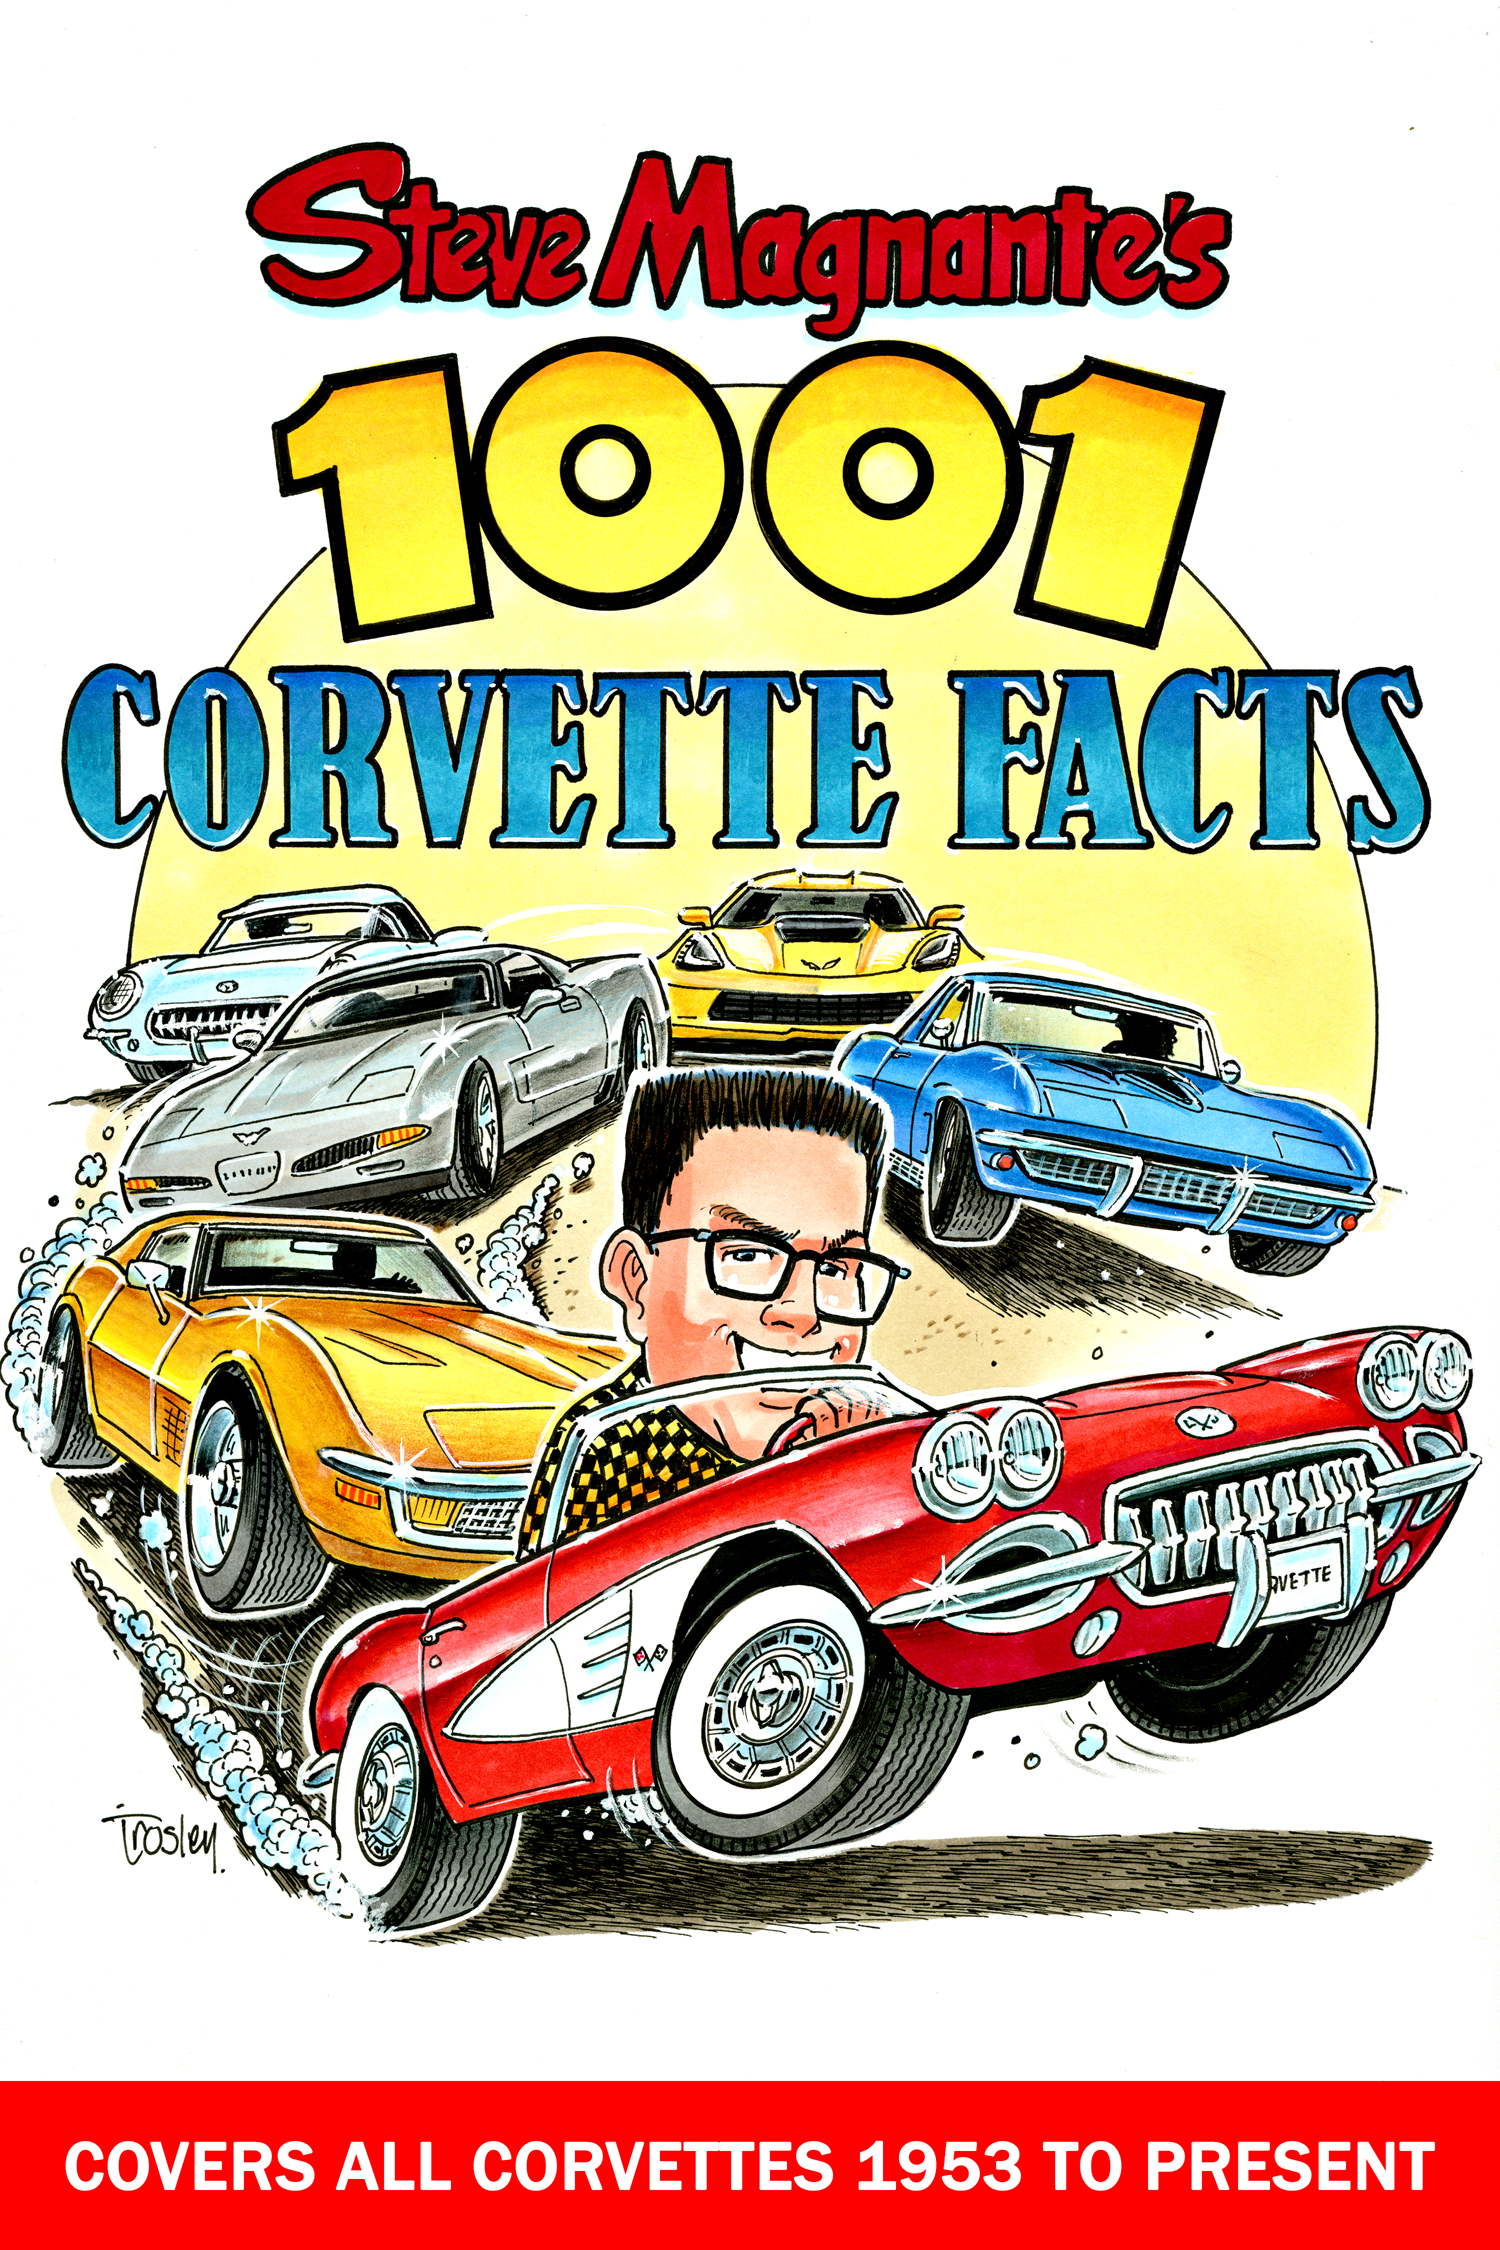 1001 Corvette Facts by Steve Magnante